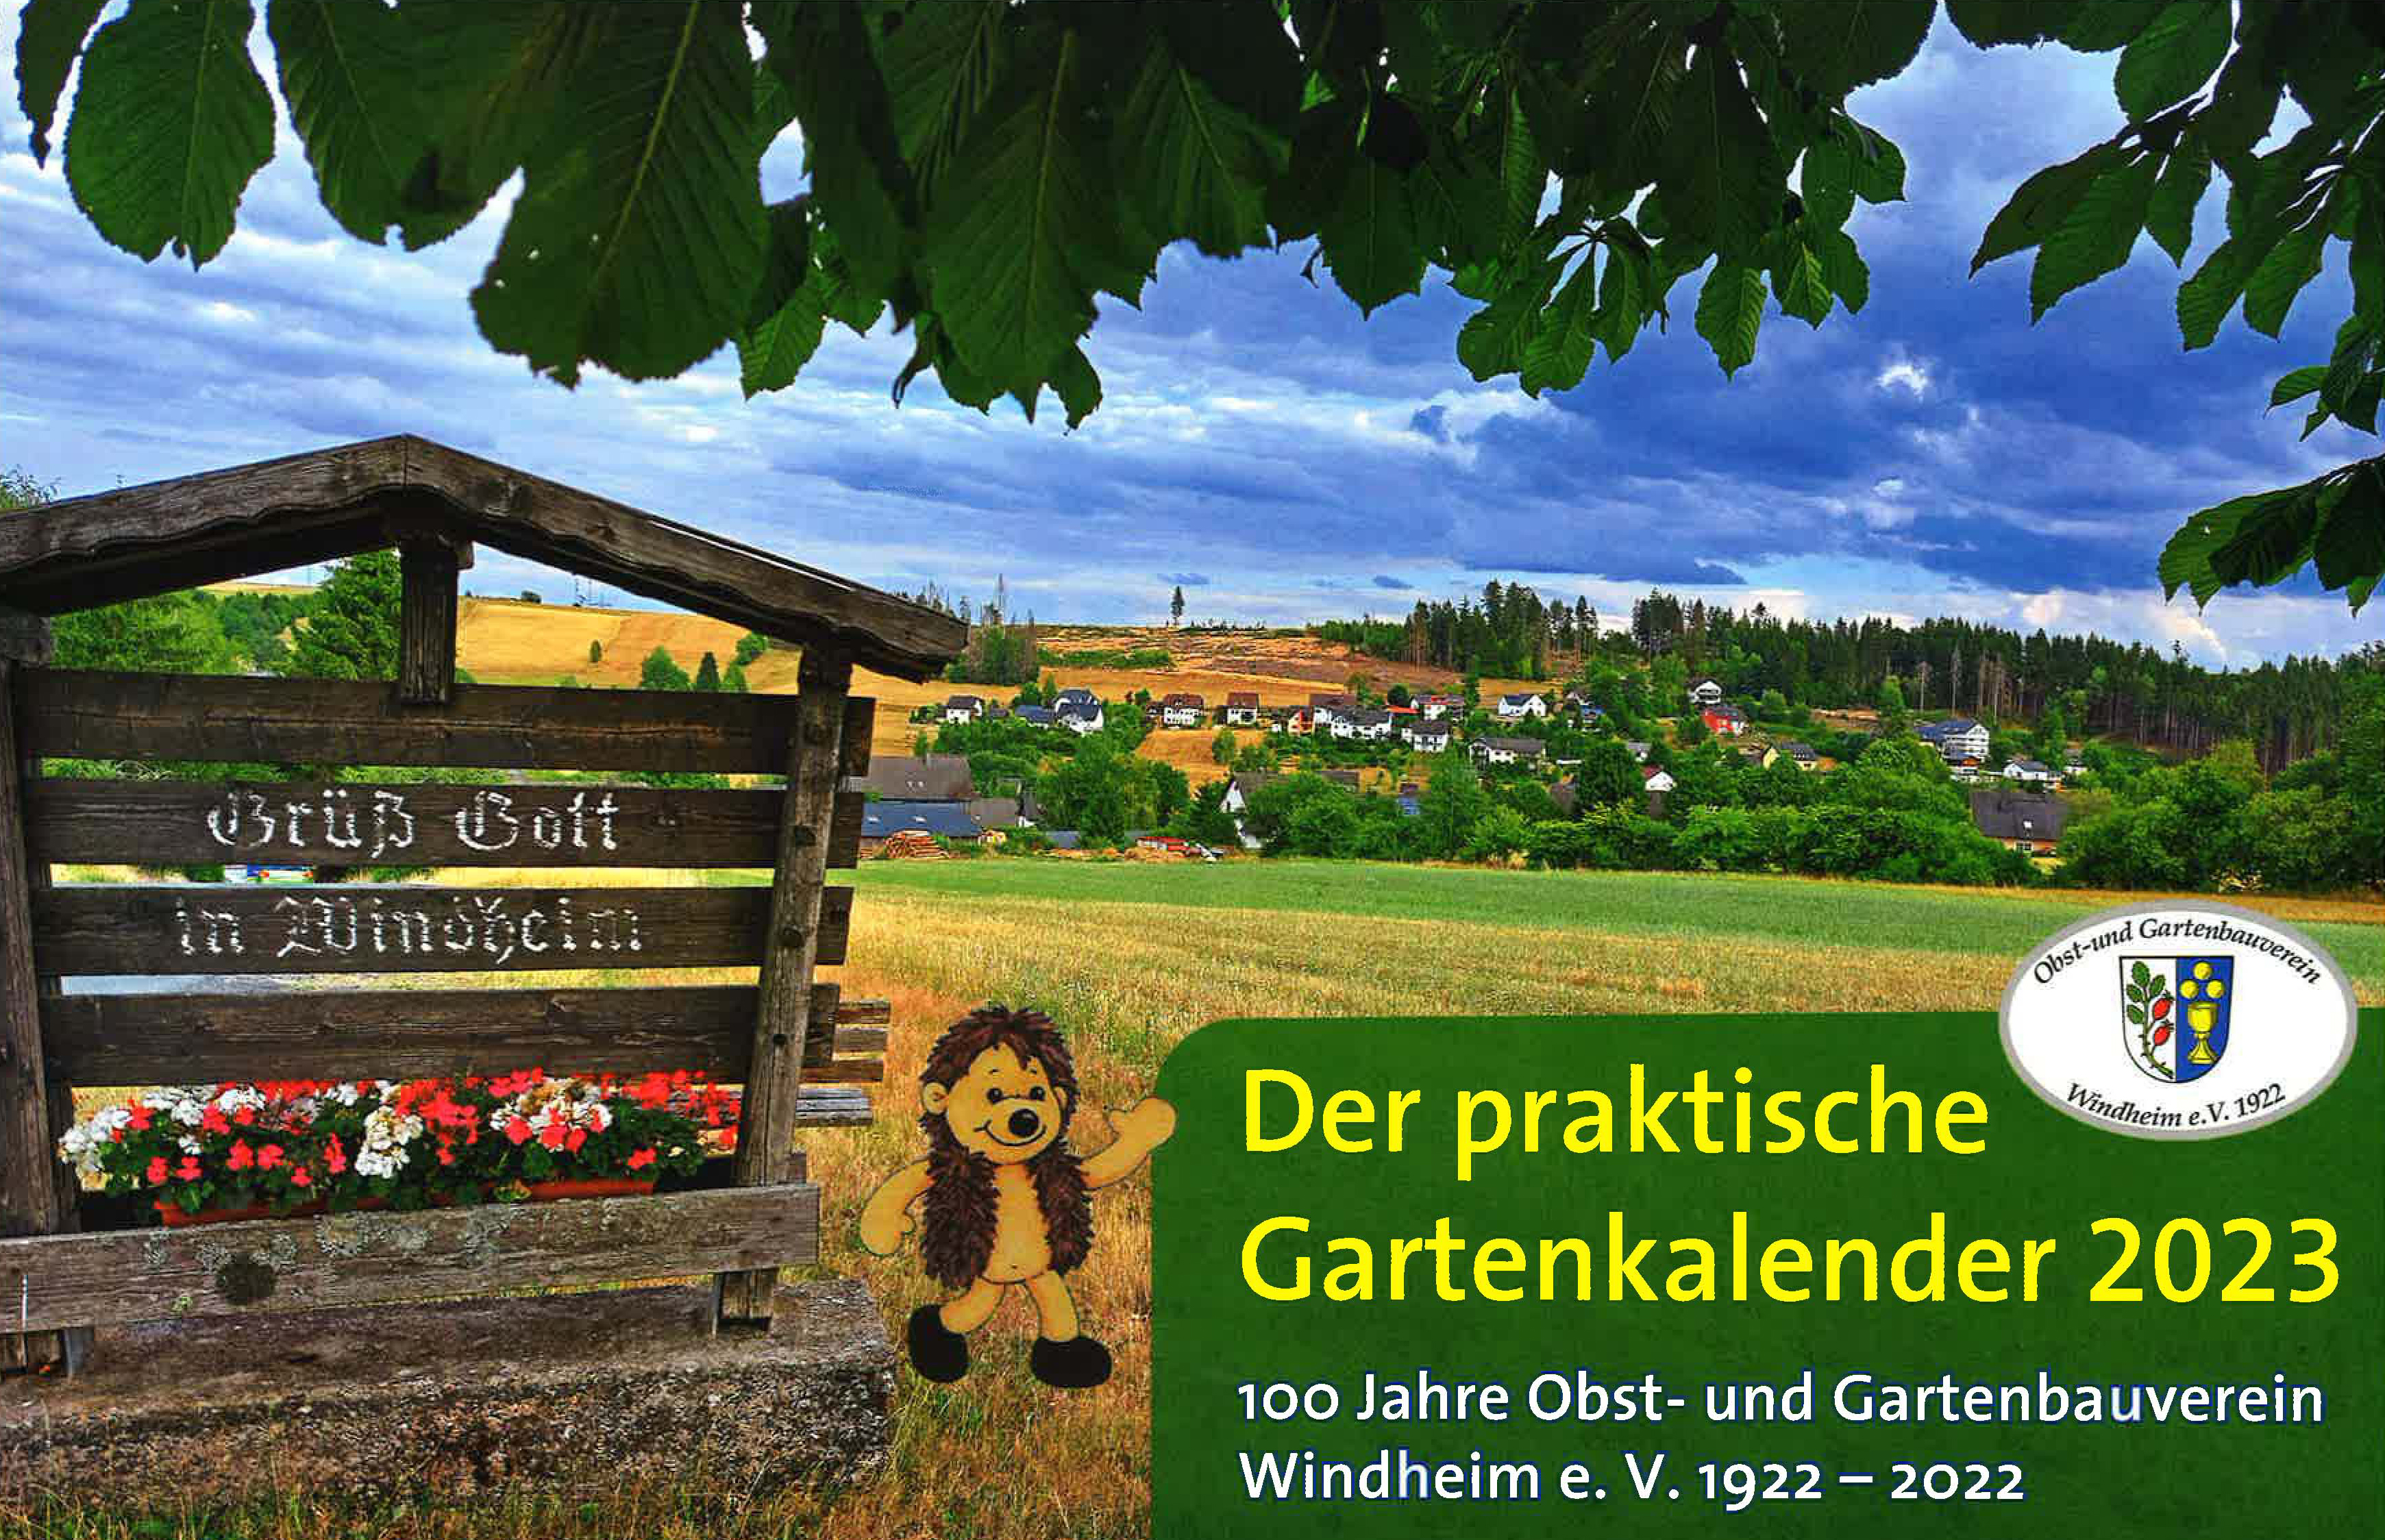 Gartenkalender 2023 des Obst- und Gartenbauvereins Windheim 